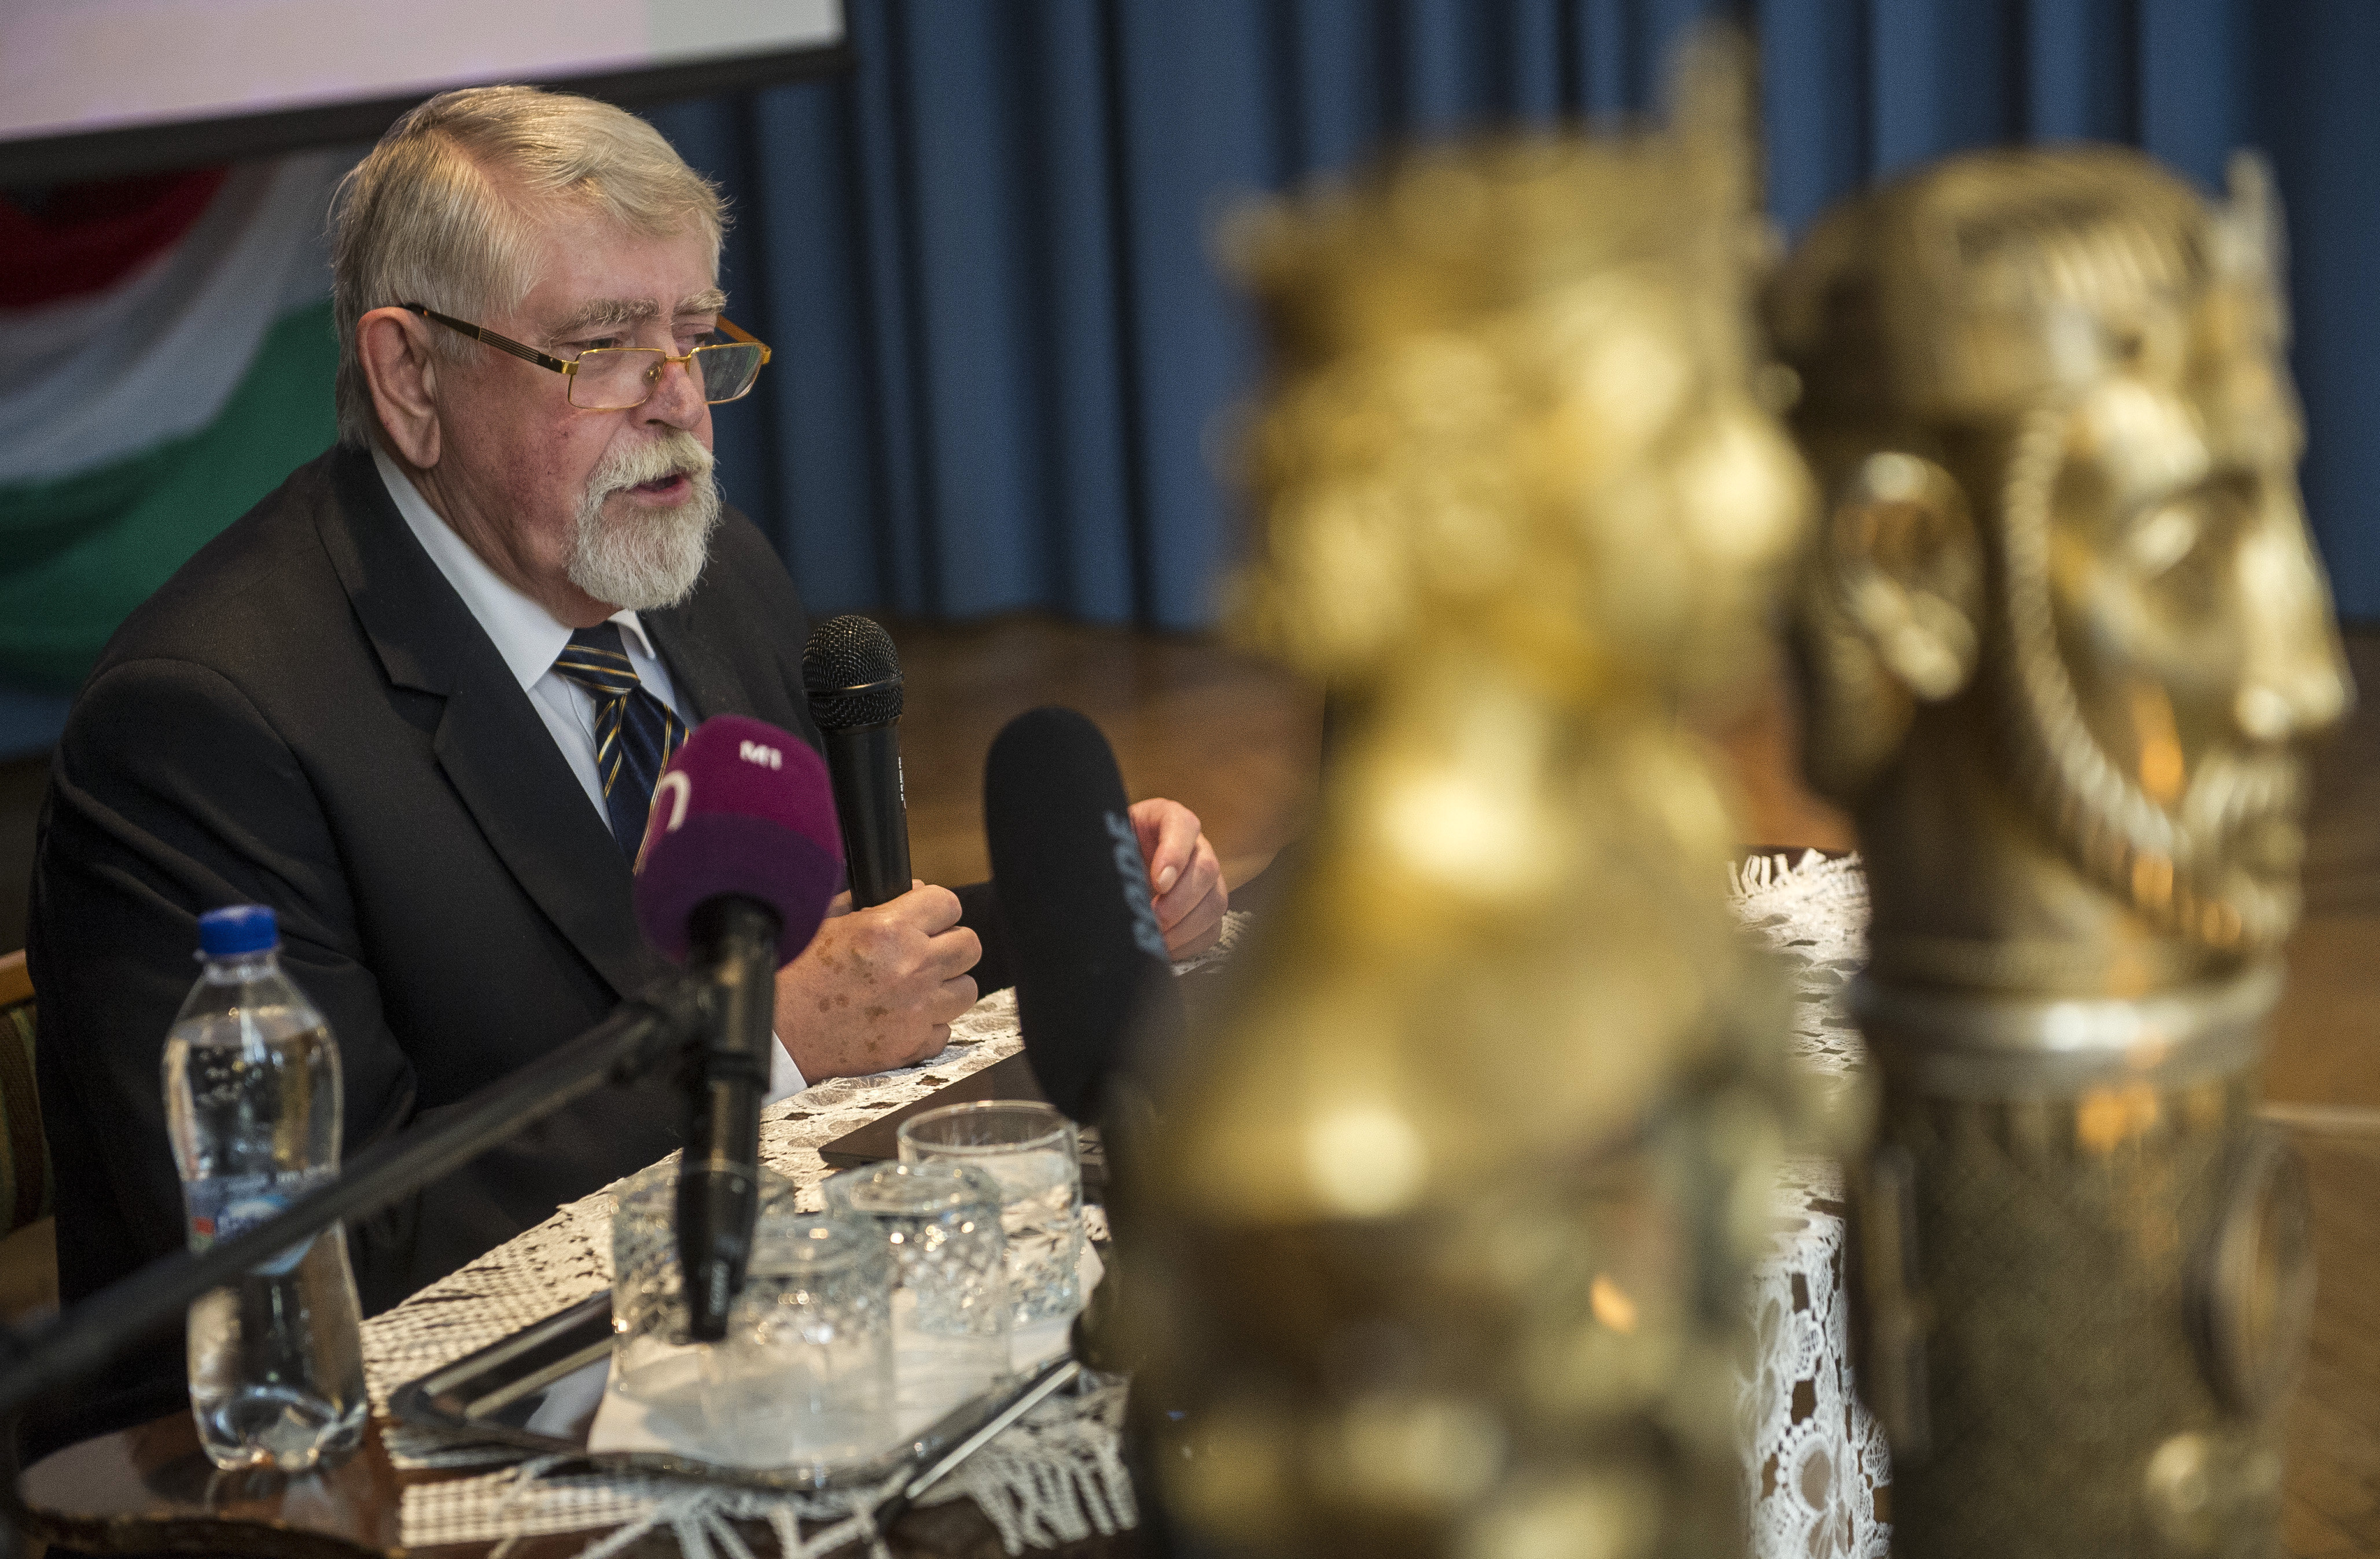 Kásler Miklós, az emberi erőforrások minisztere beszédet mond a Szent István emlékkonferencián Kecskeméten, a Piarista Gimnázium Dísztermében 2019. szeptember 12-én